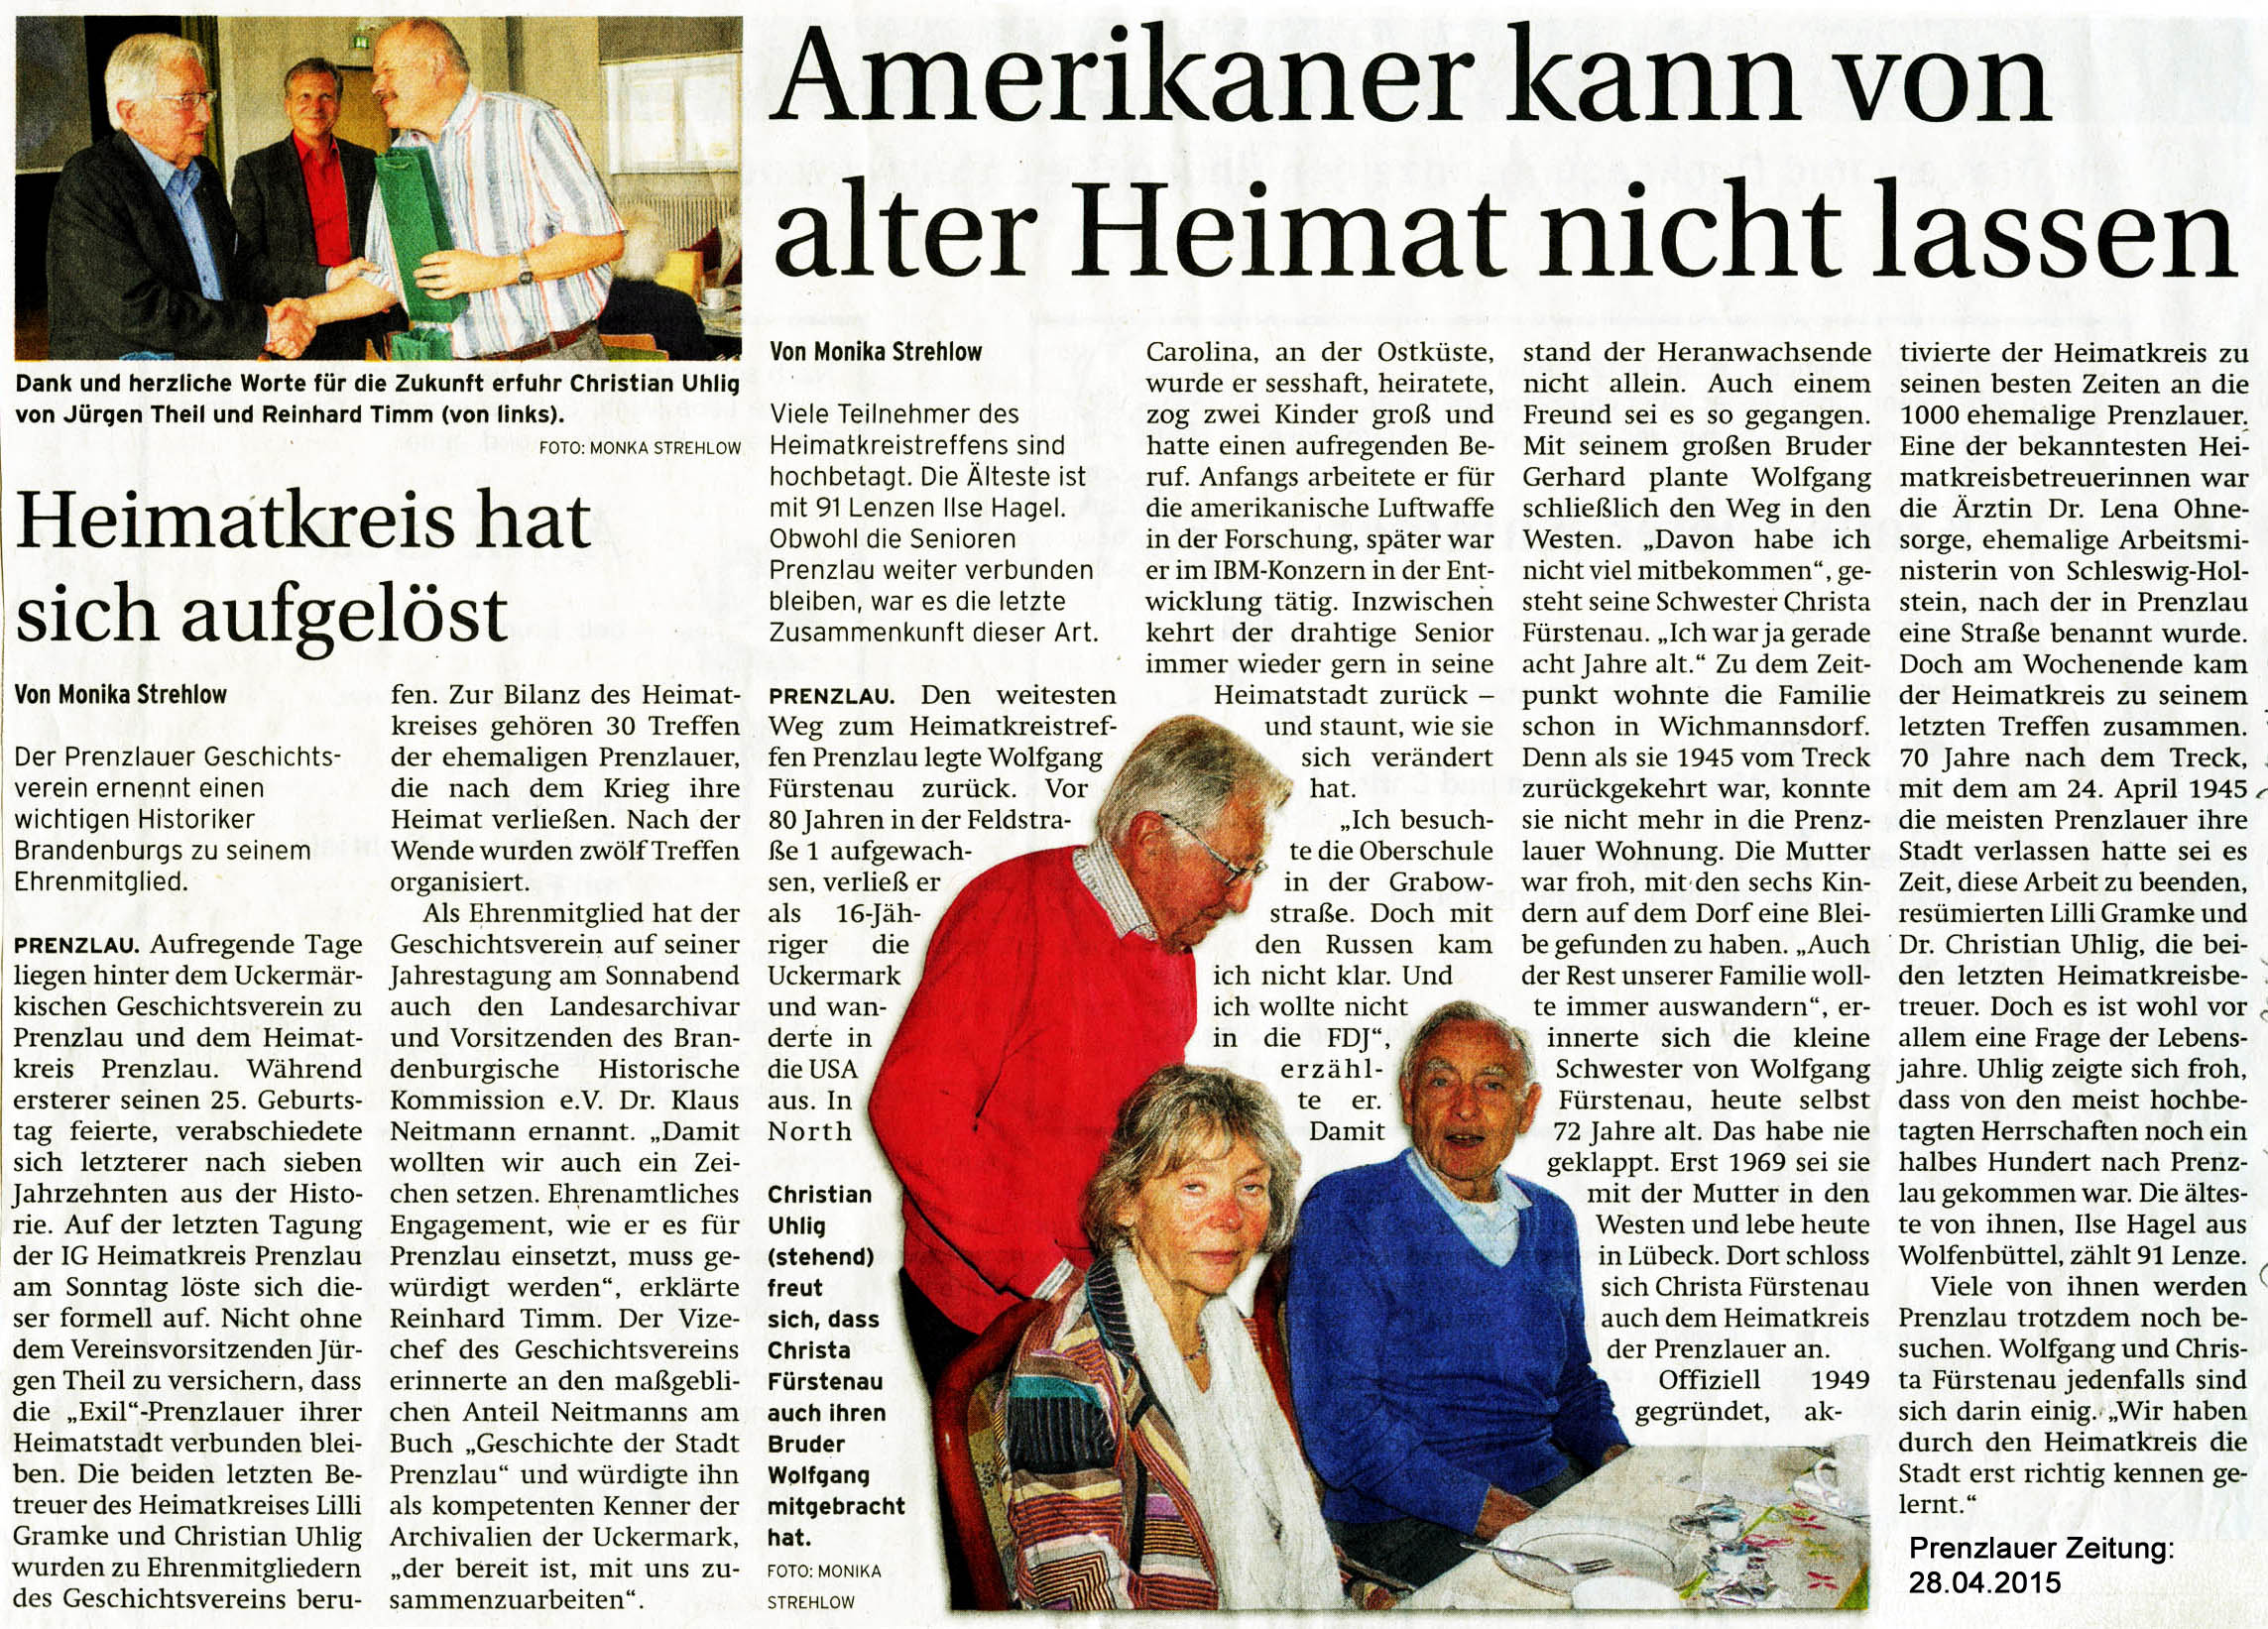 Prenzlauer Heimatverein: Prenzlauer Zeitung vom 28.04.2015